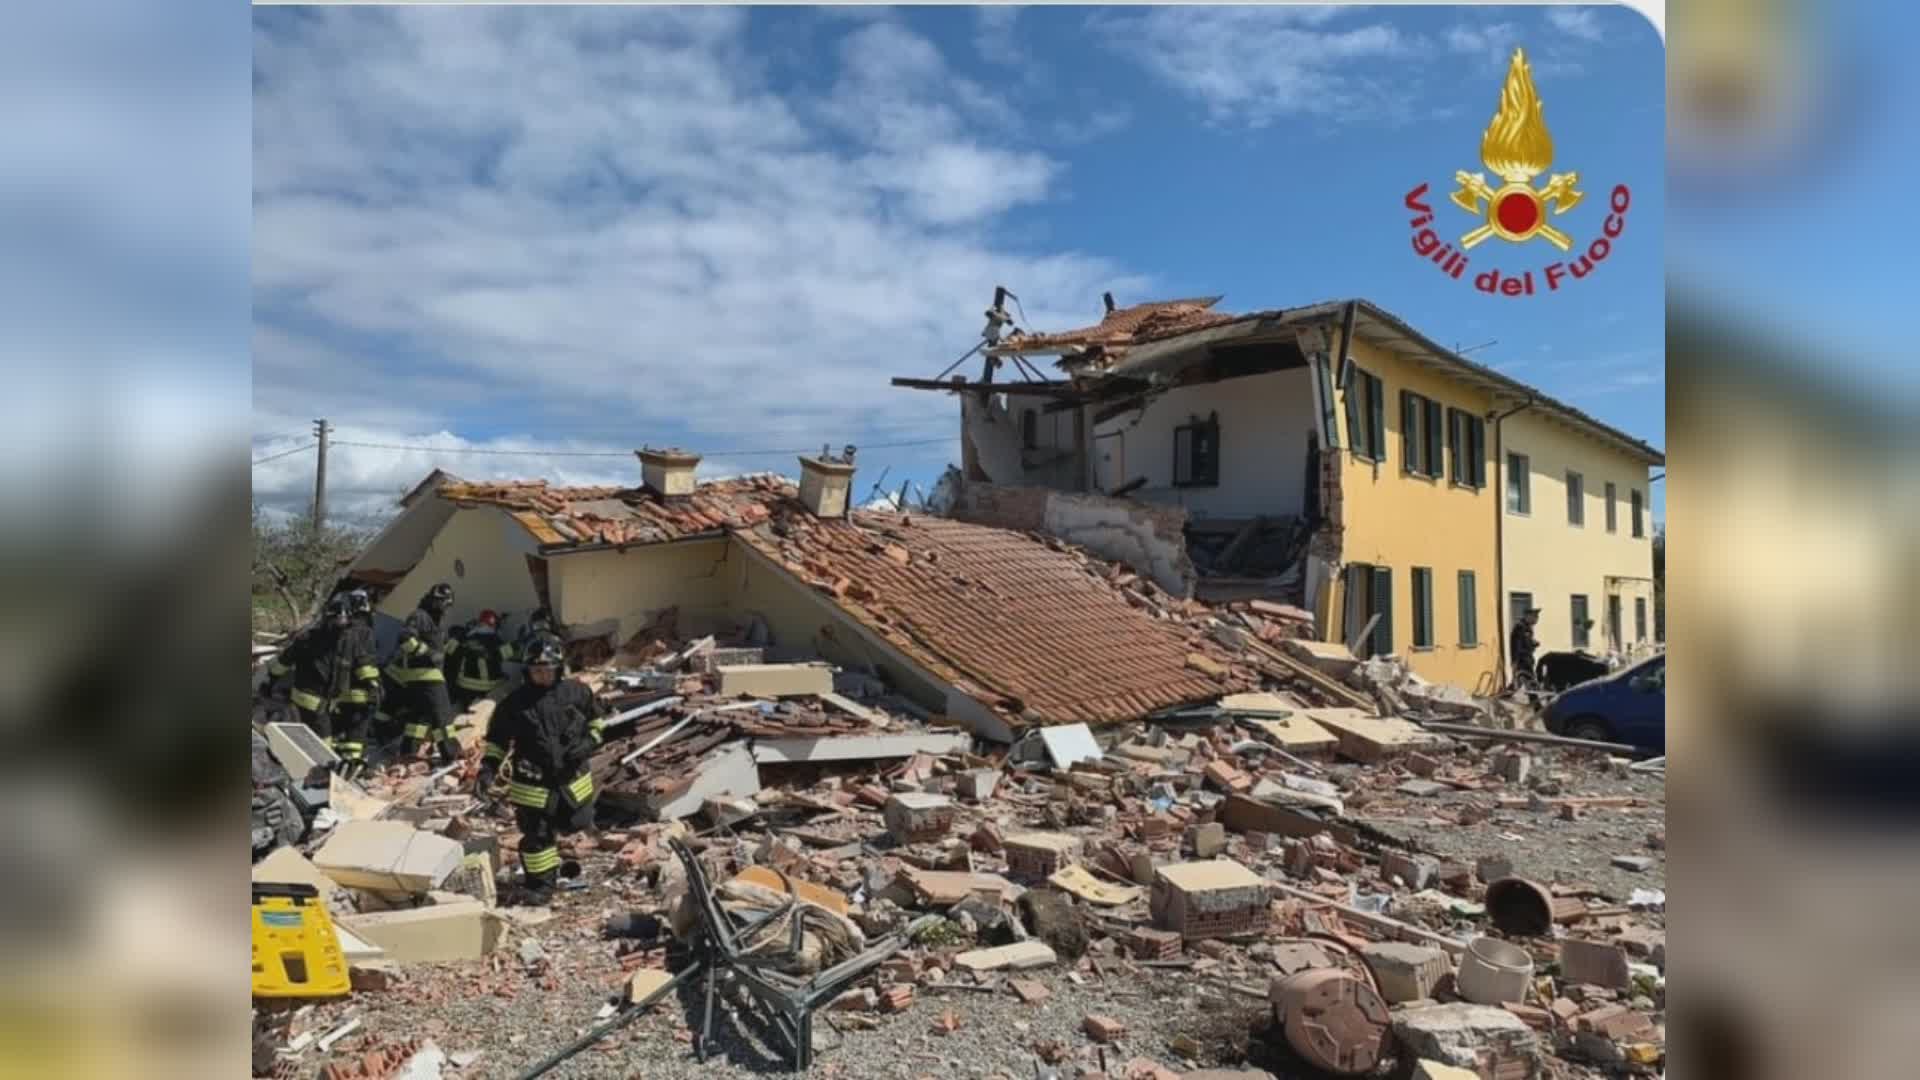 Montecarlo (Lu): crolla una abitazione, persone coinvolte